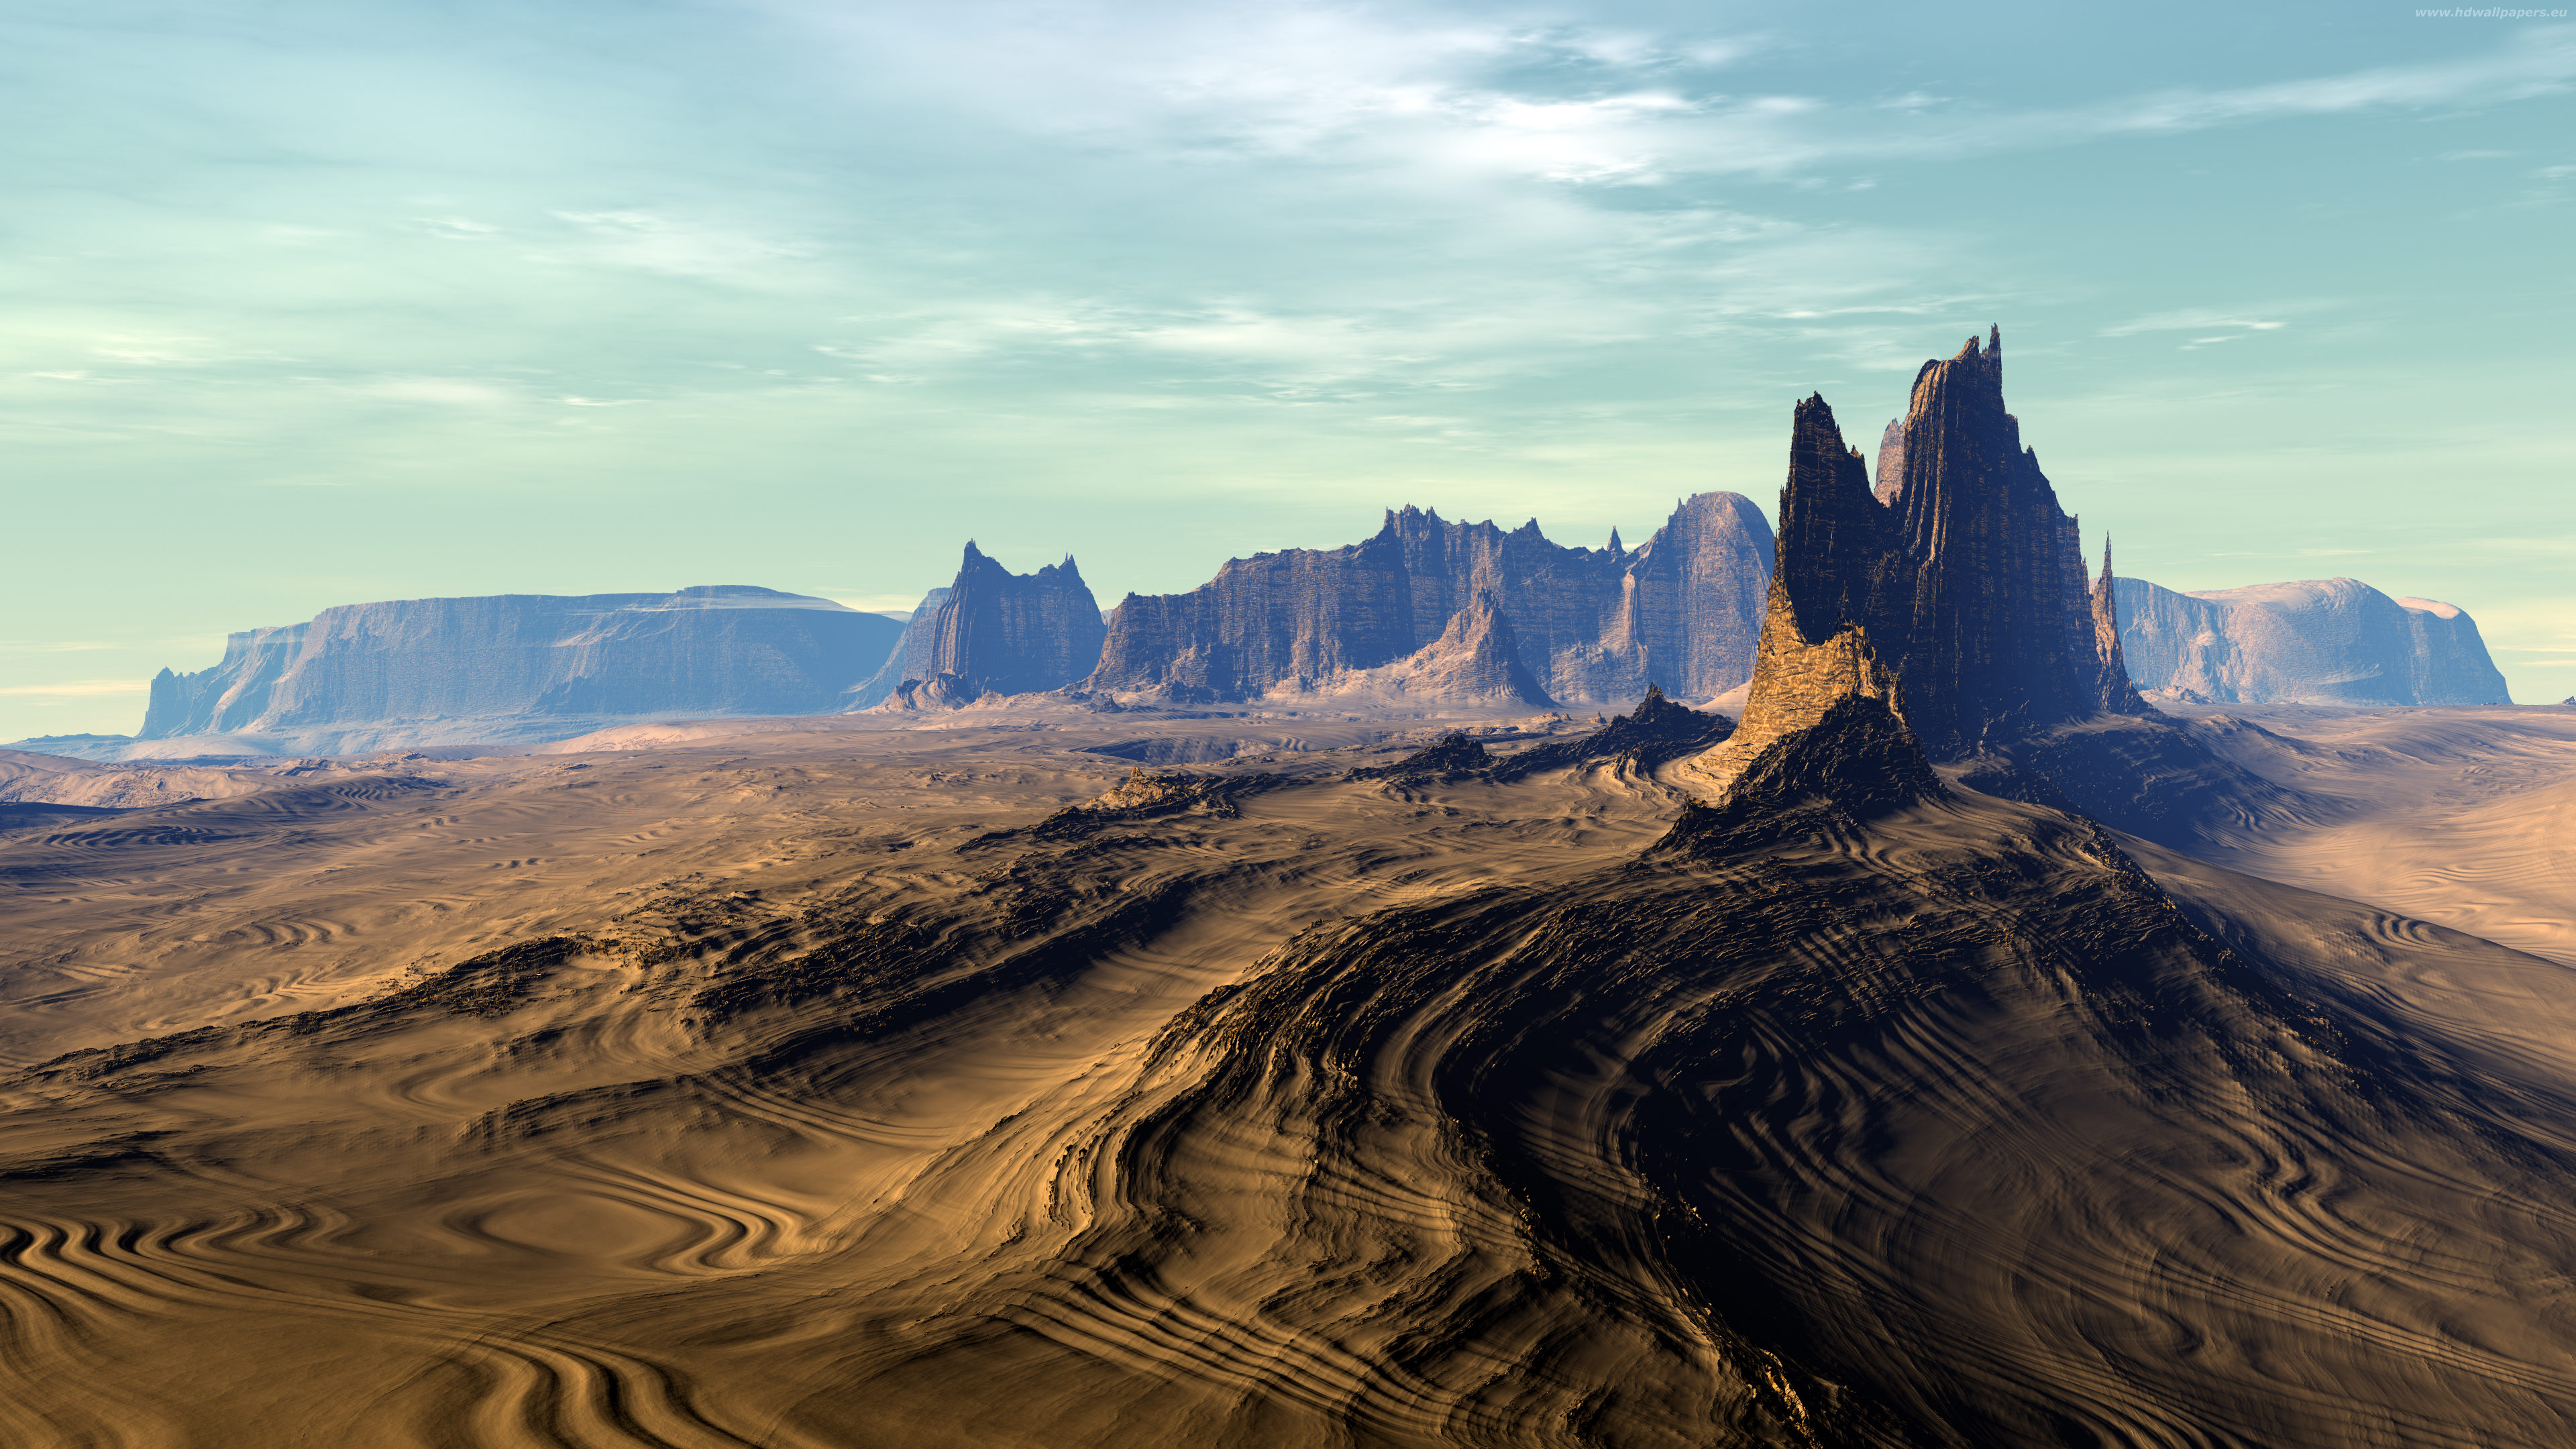 Desert Sand 4K Resolution Wallpaper Free Download. desert-sand-4k-resolutio...